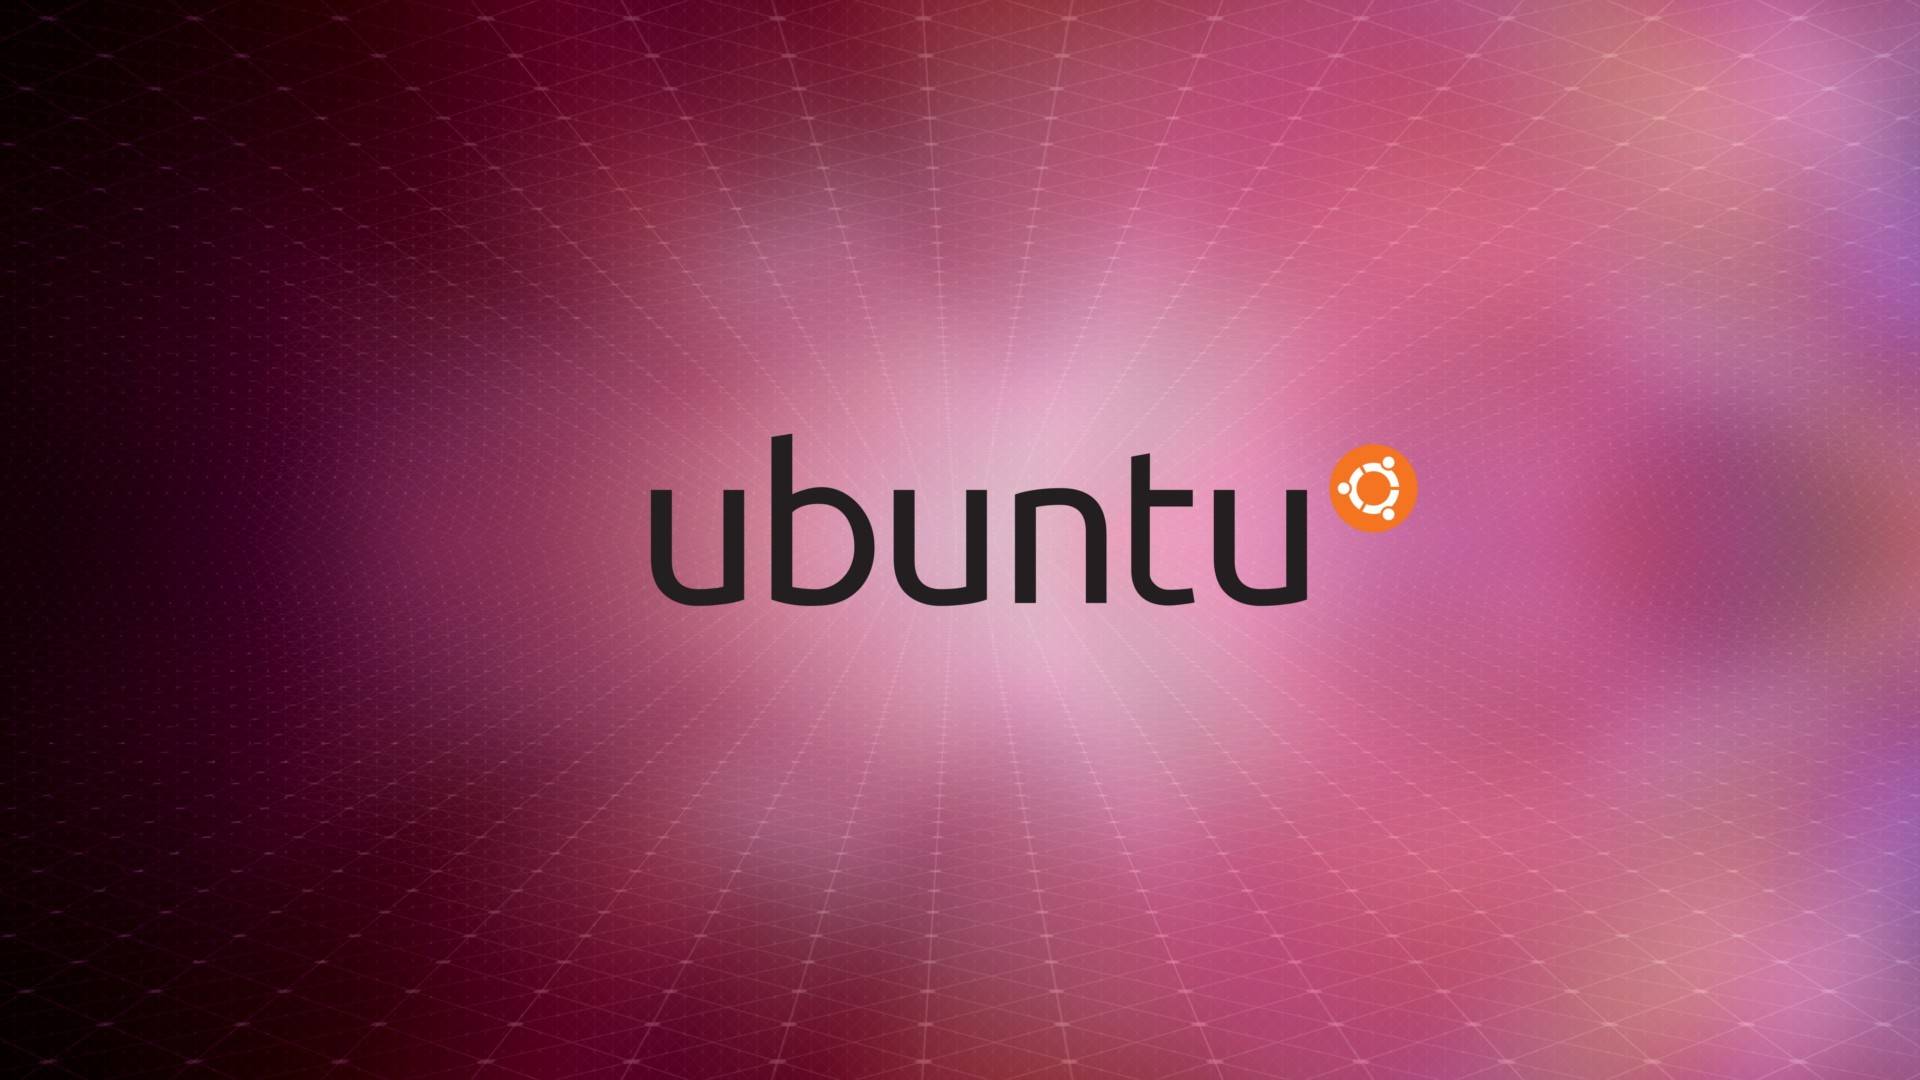 Linux Ubuntu Wallpaper